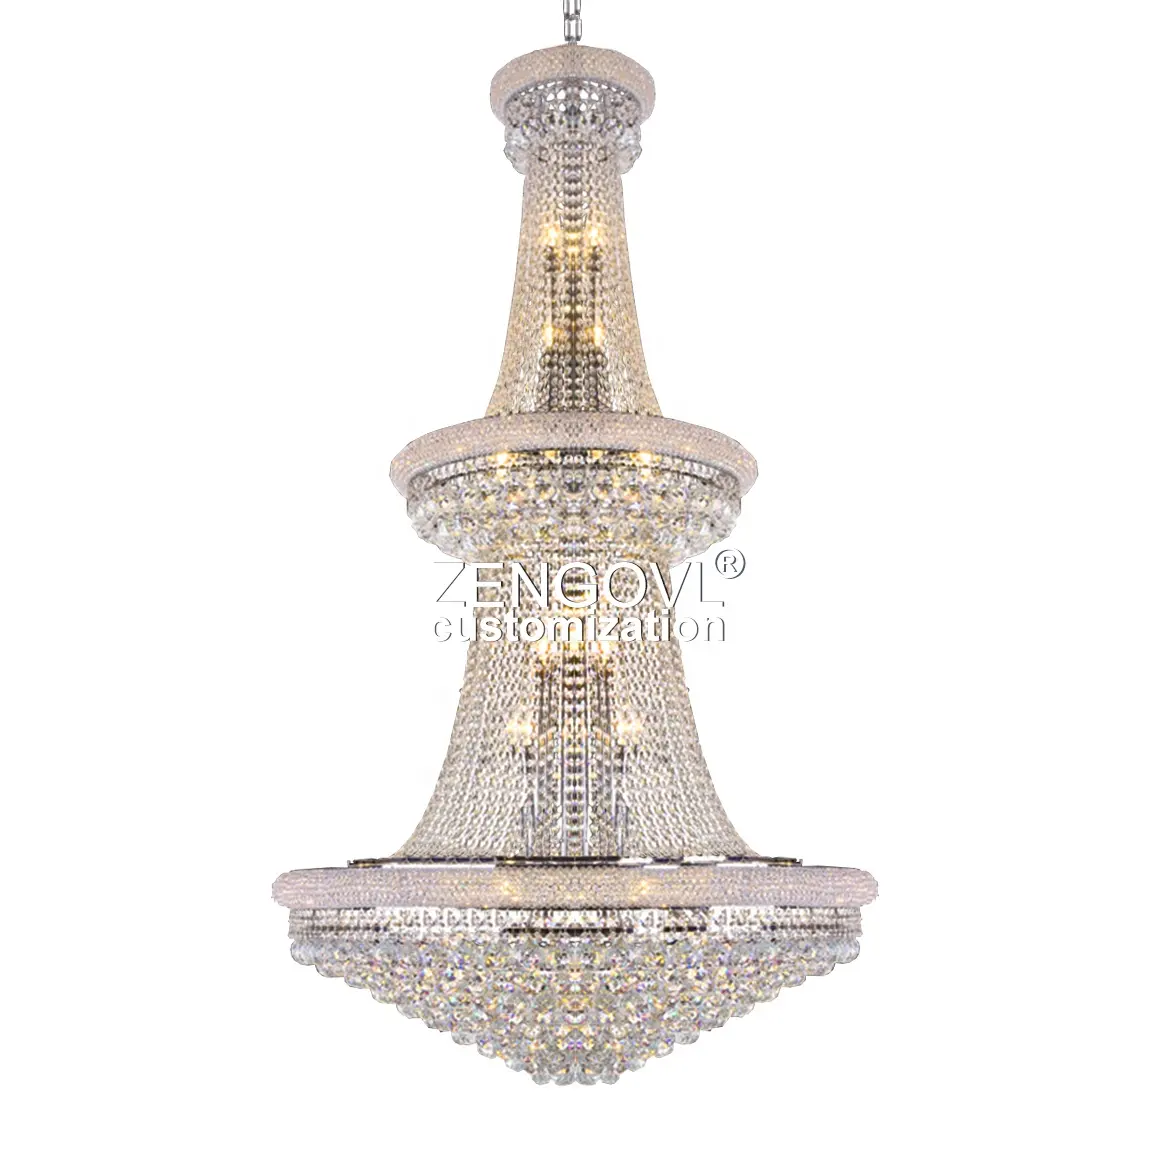 Современная хрустальная люстра ZENGOVL для вестибюля отеля, большая люстра в стиле ампир, свадебная вилла, Золотая хрустальная люстра k9, освещение